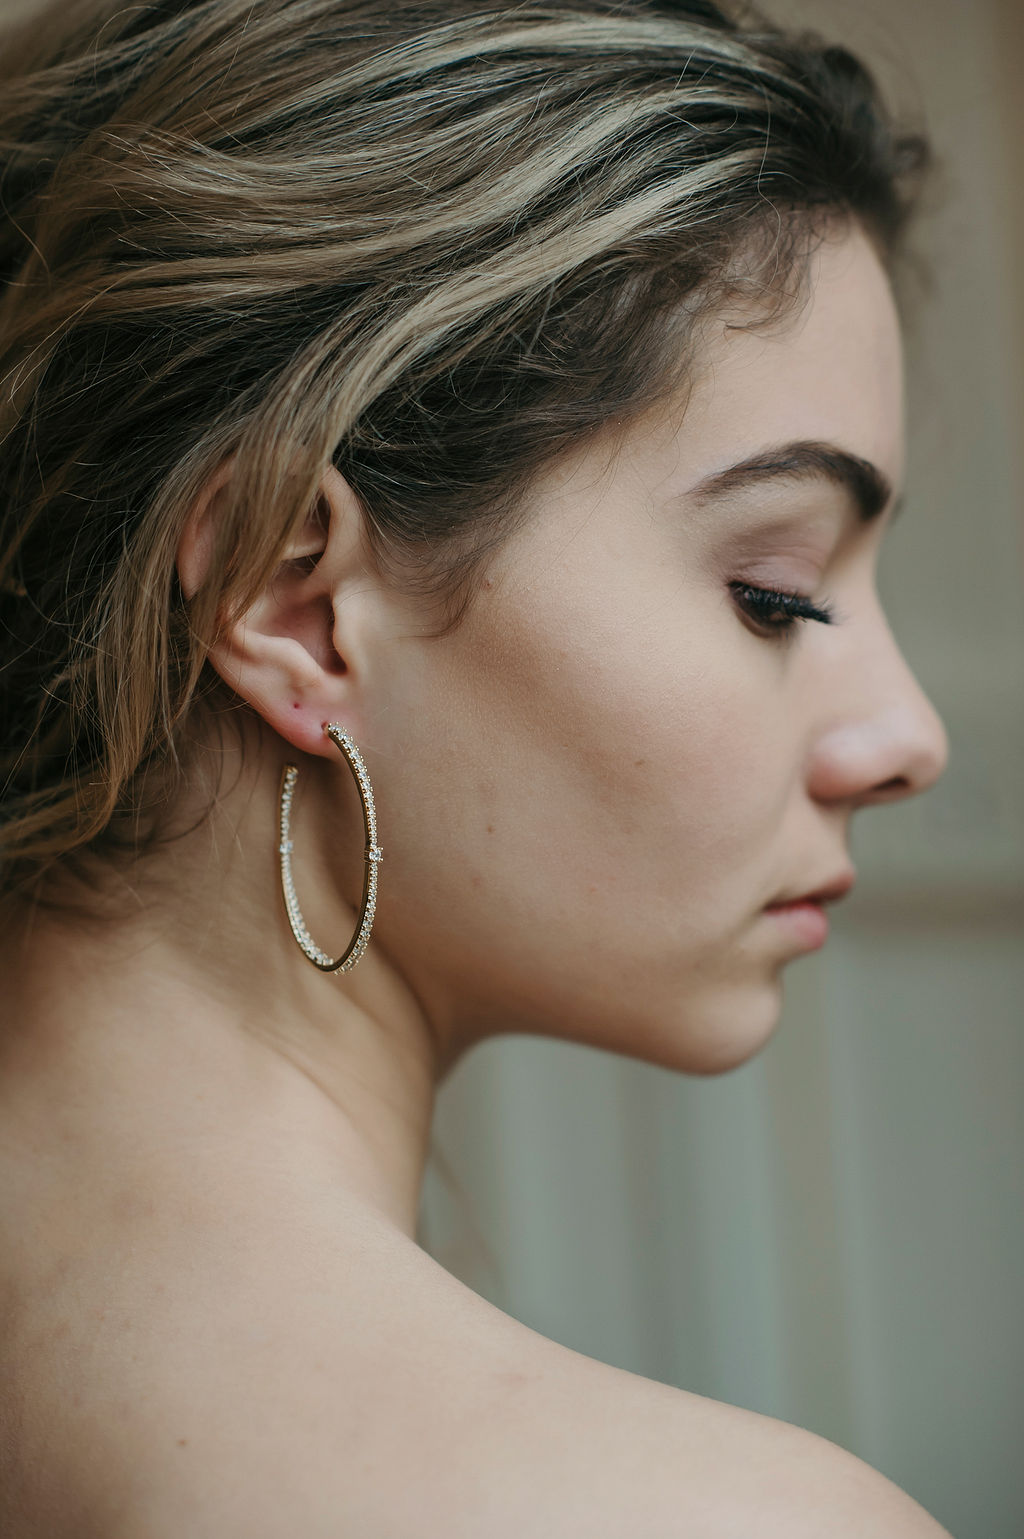 Gold Diamond Hoop Earrings|Beige|Jeanette Maree|Shop Online Now